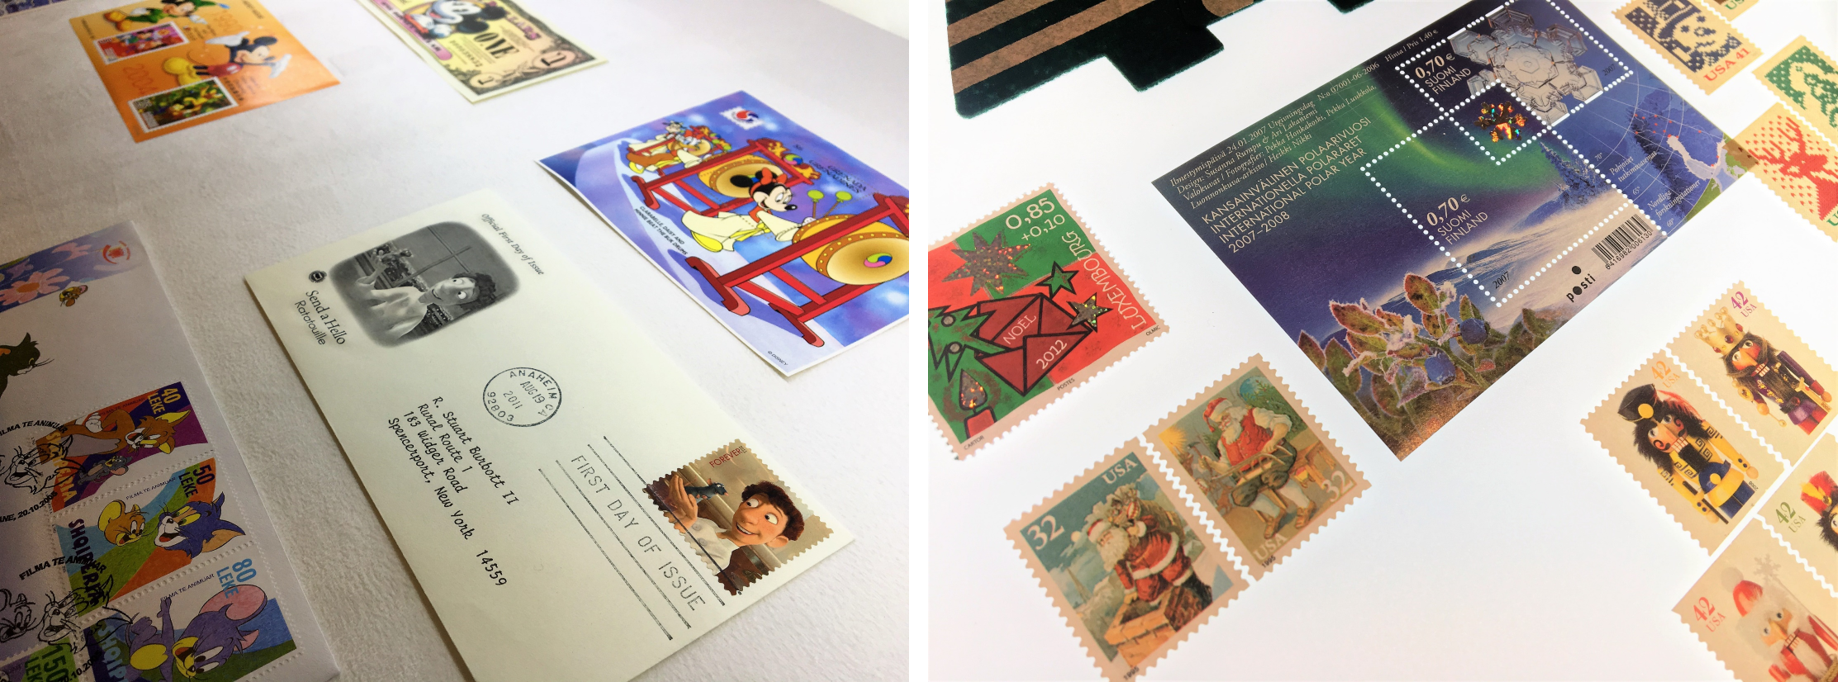 1959년부터 발행되었던 우리나라의 쥐 연하우표와 금박, 자개 등 특이한 재질로 만들어진 우표,쥐를 모티브로 발행된 애니메이션 우표와 더불어 미키마우스 기념화폐, 오스트레일리아 2020년 기념주화 등을 전시사진1